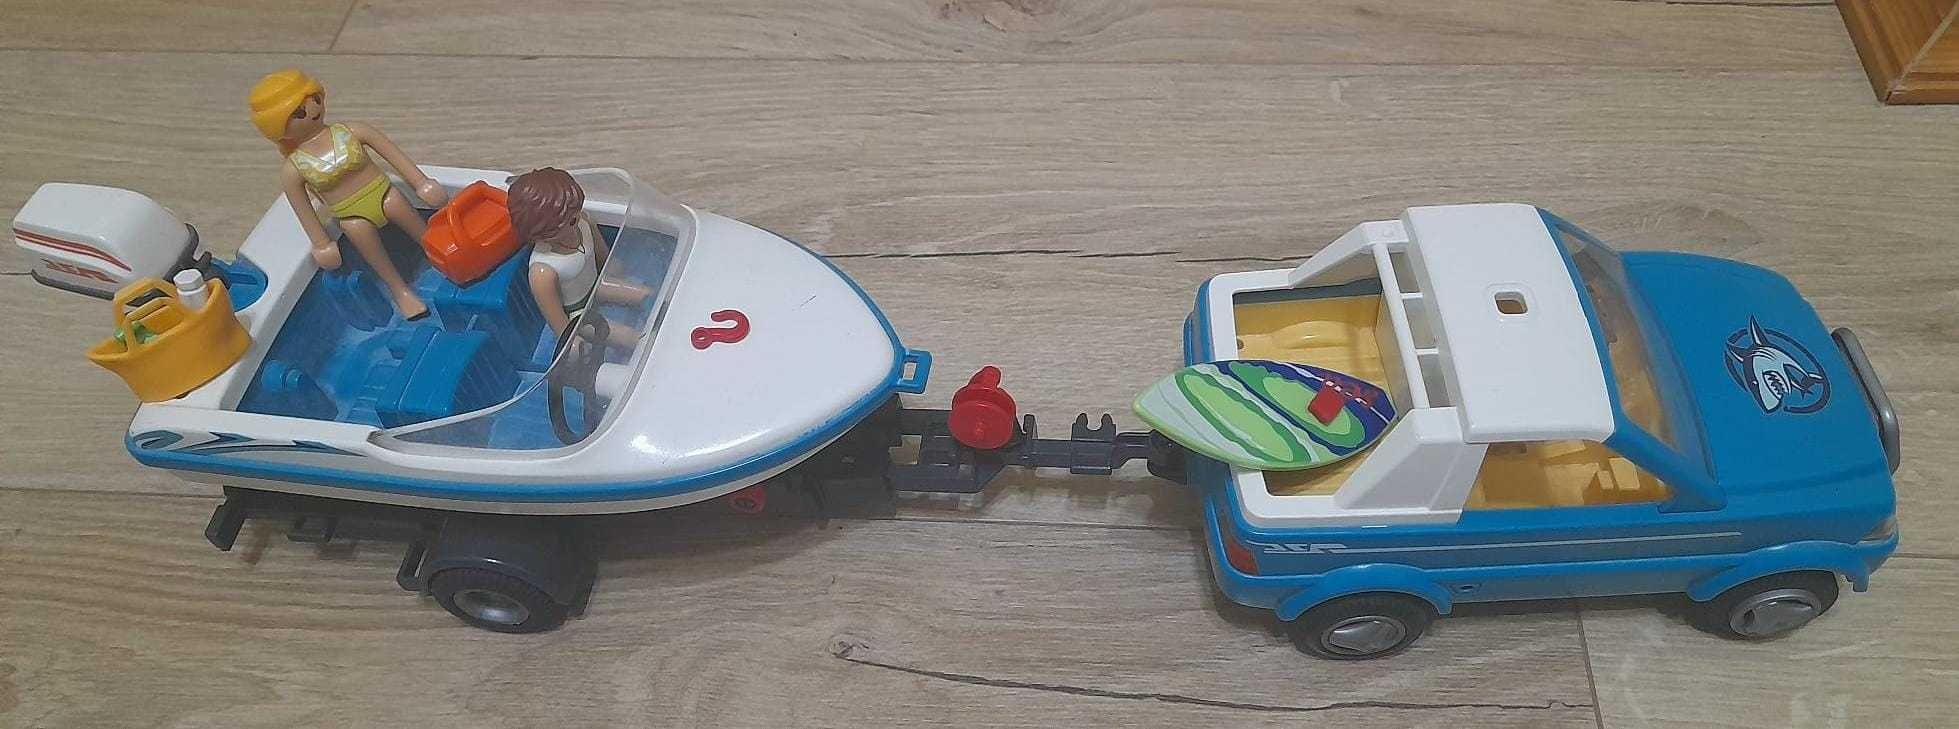 Playmobil Masina cu vaporas Summer fun